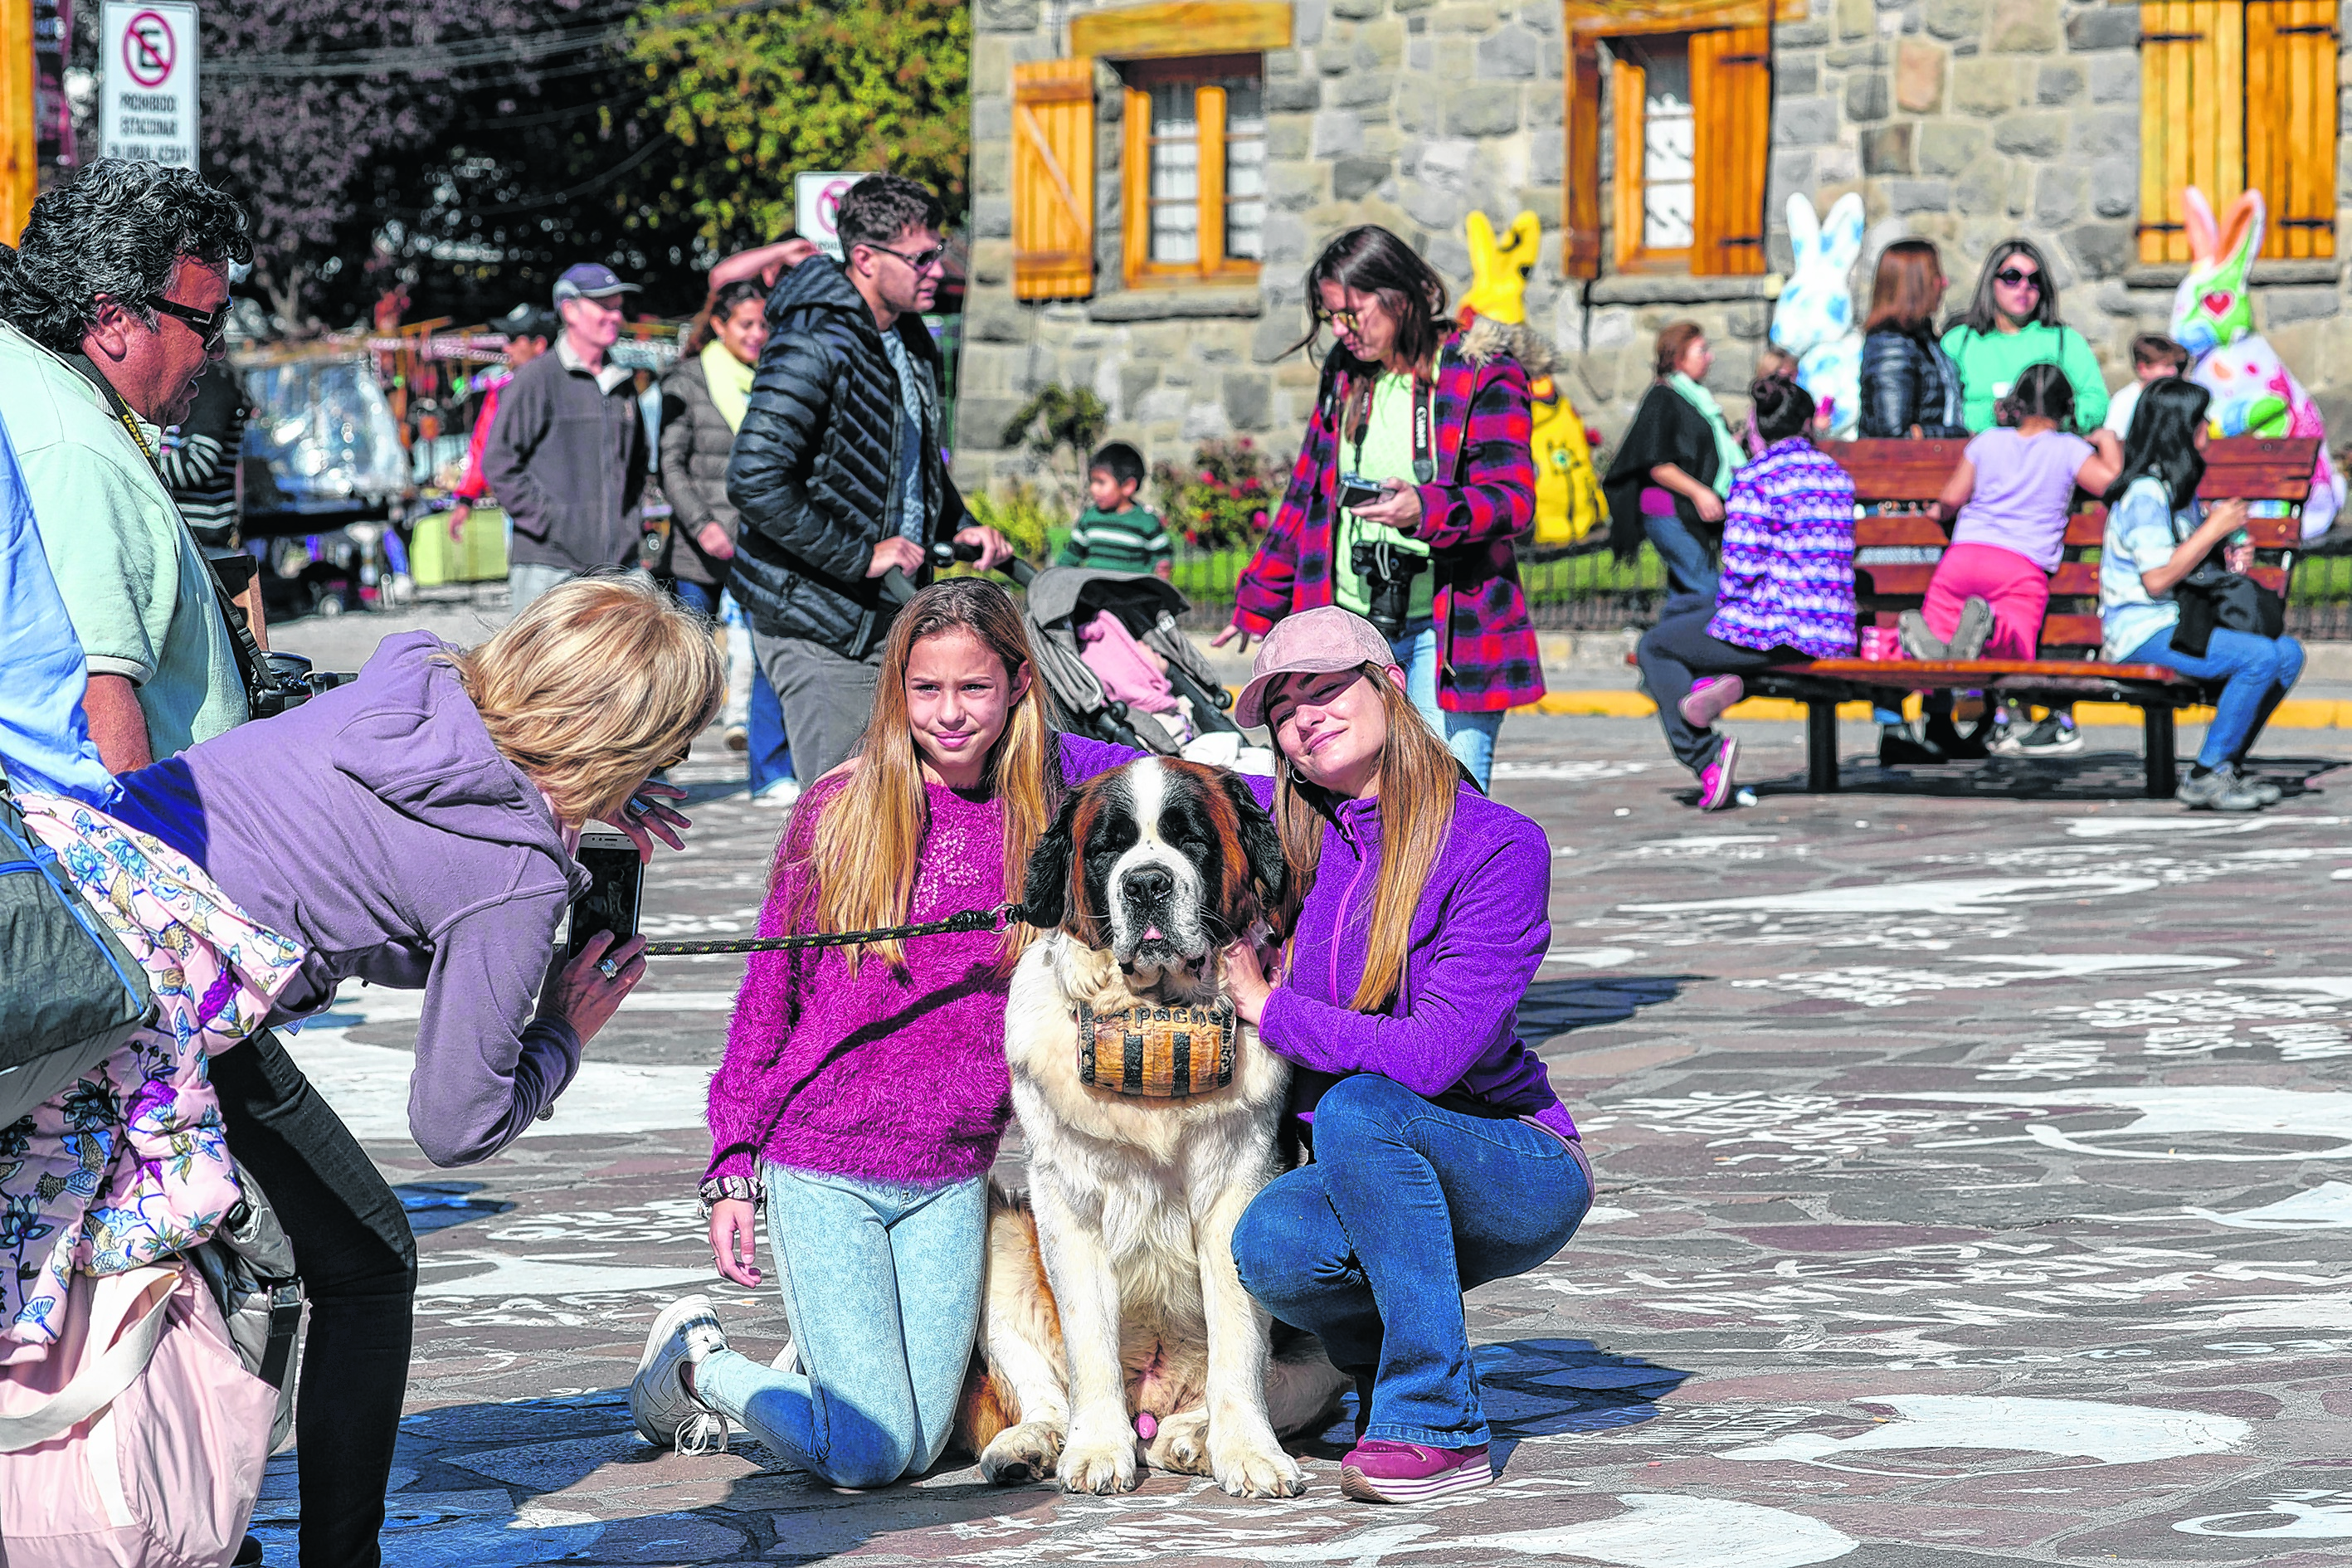  El fin de semana largo de Semana Santa, Bariloche fue el destino más elegido de la región. Foto: archivo